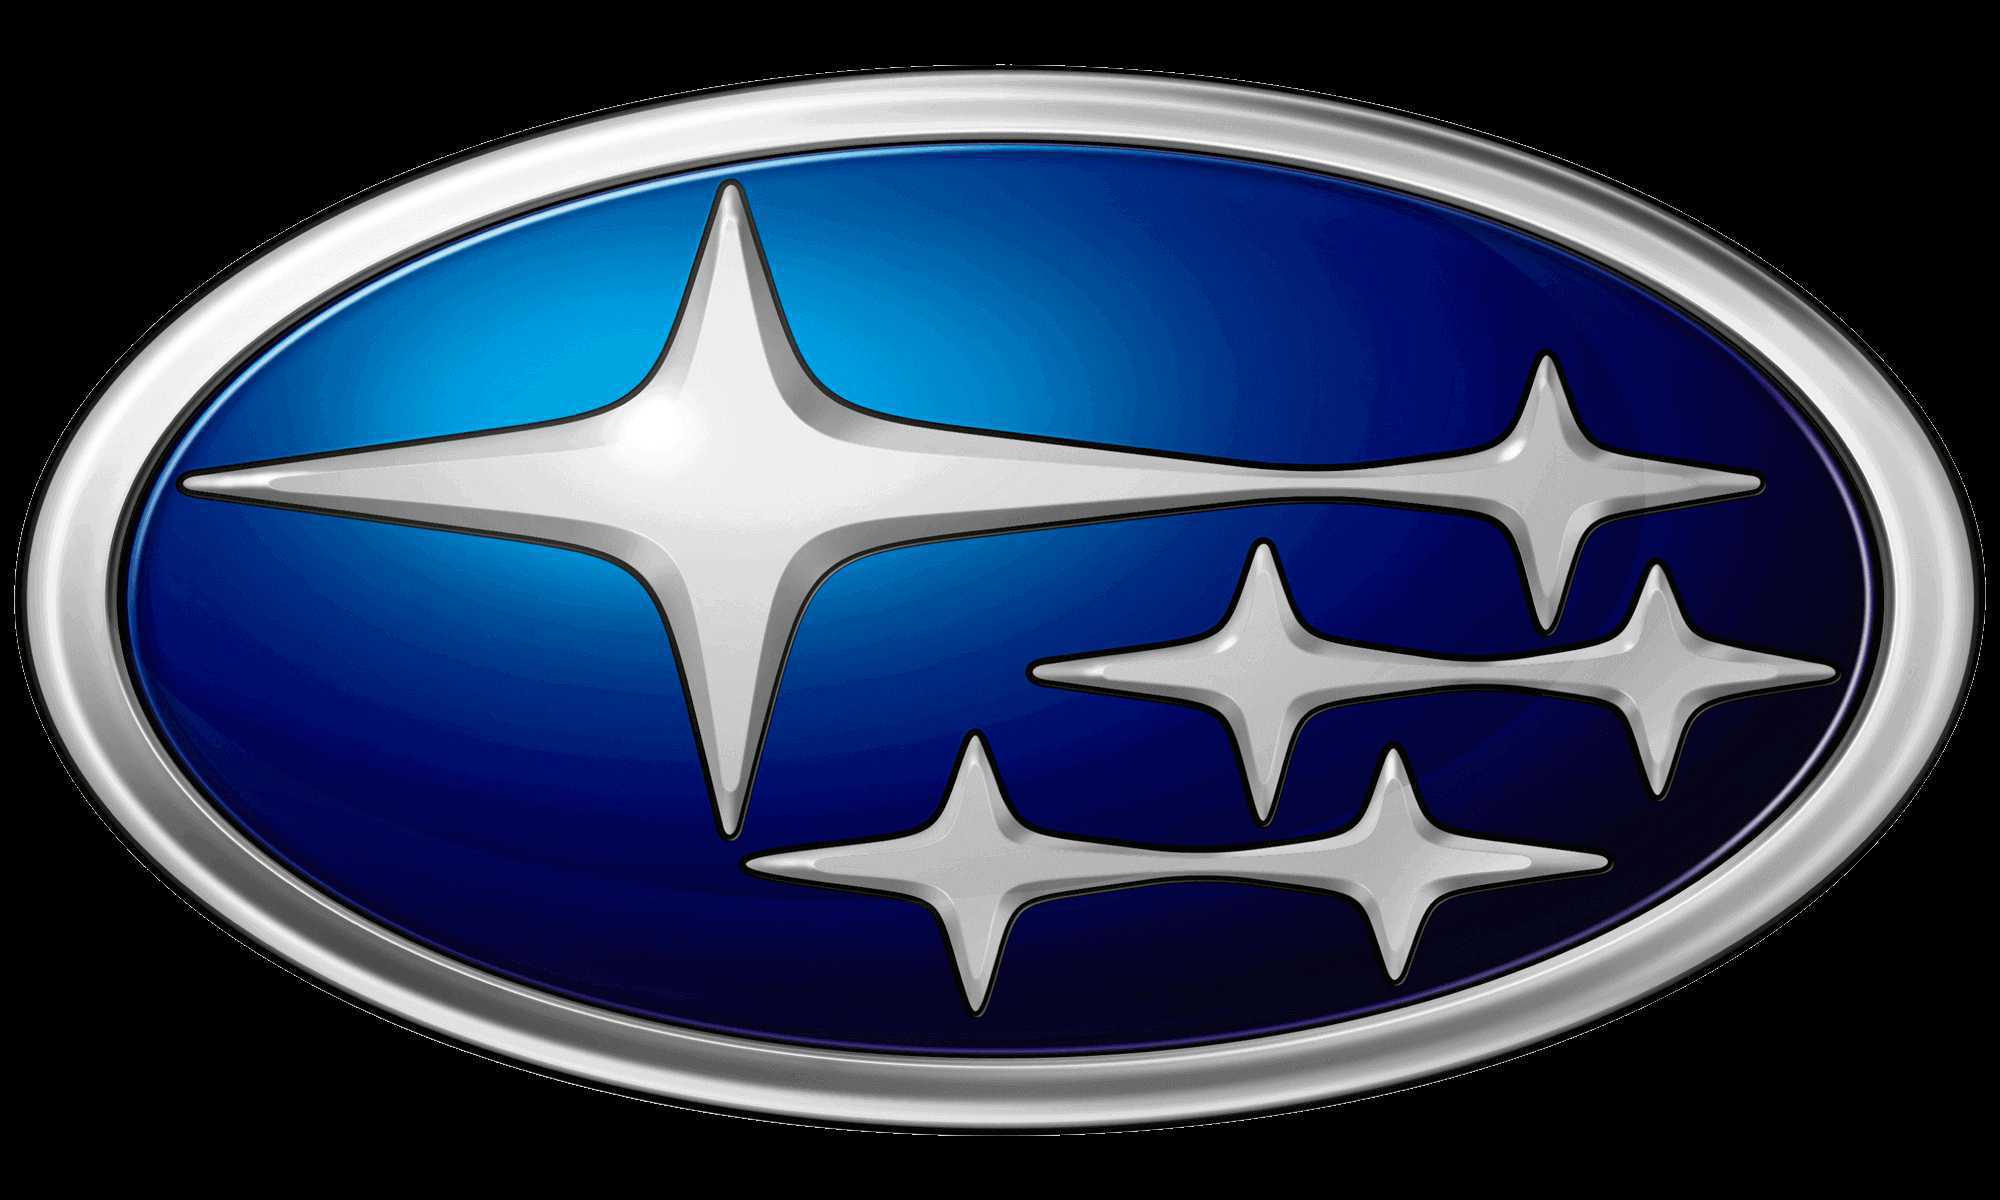 Subaru Cars for Sale in Kenya | Magari Deals